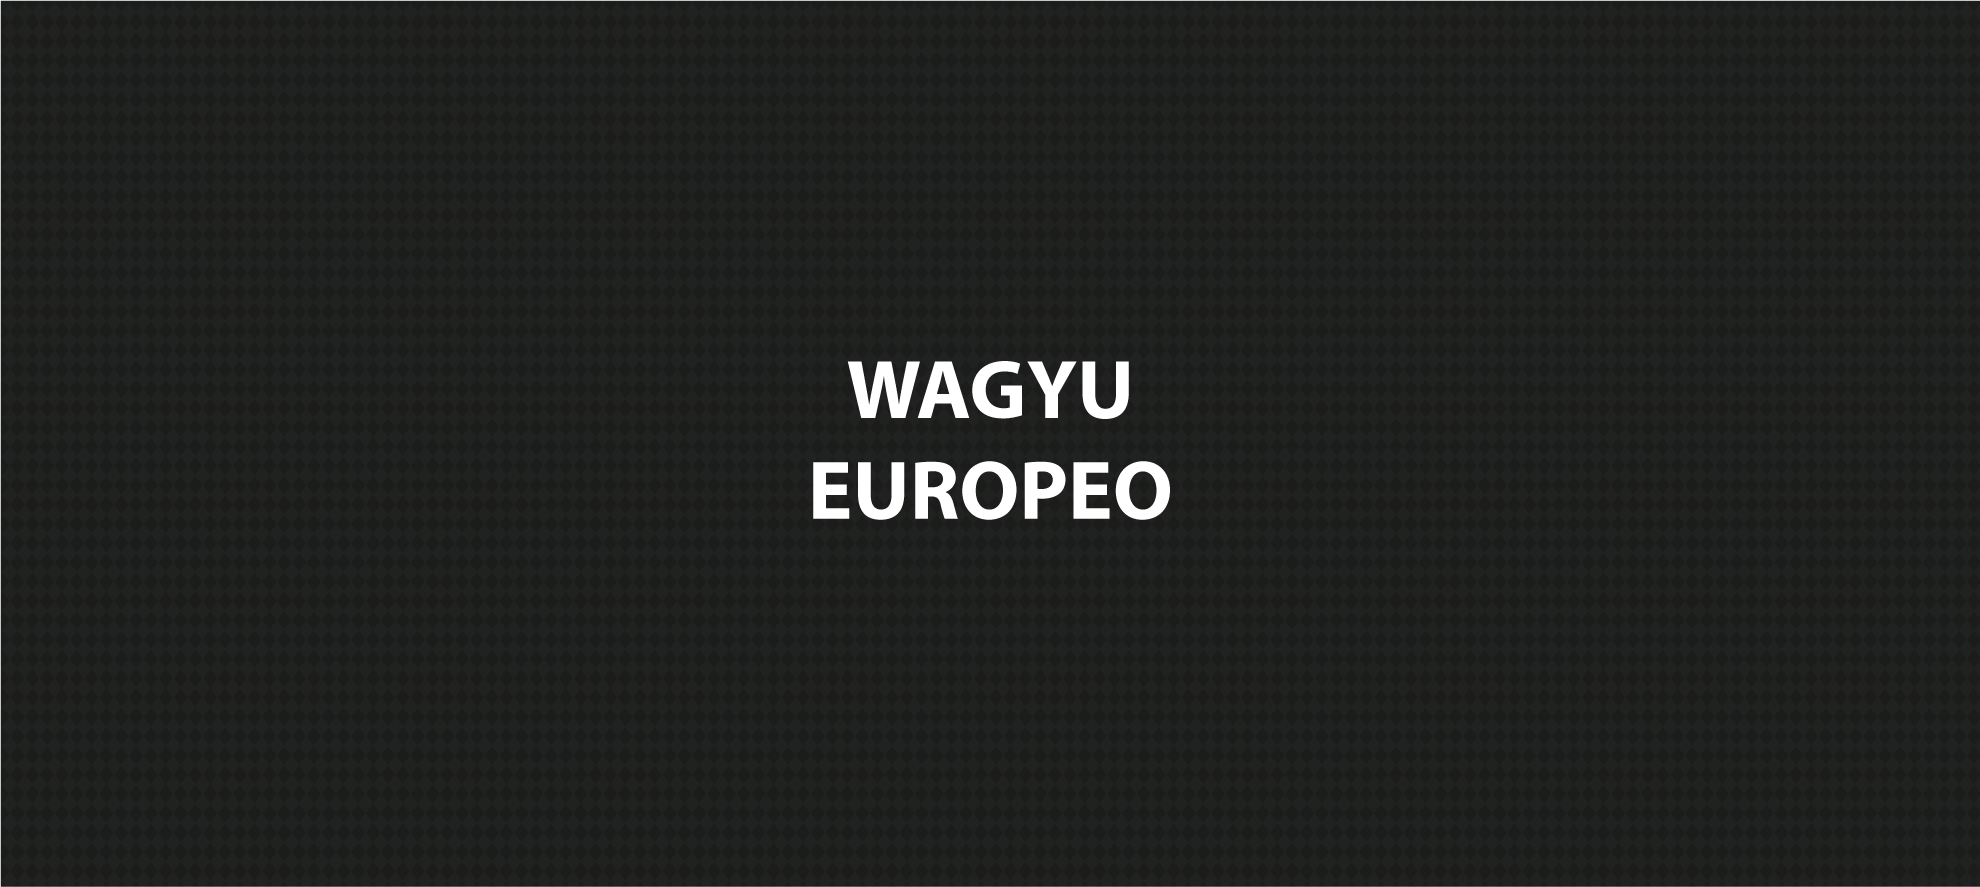 Wagyu Europeo